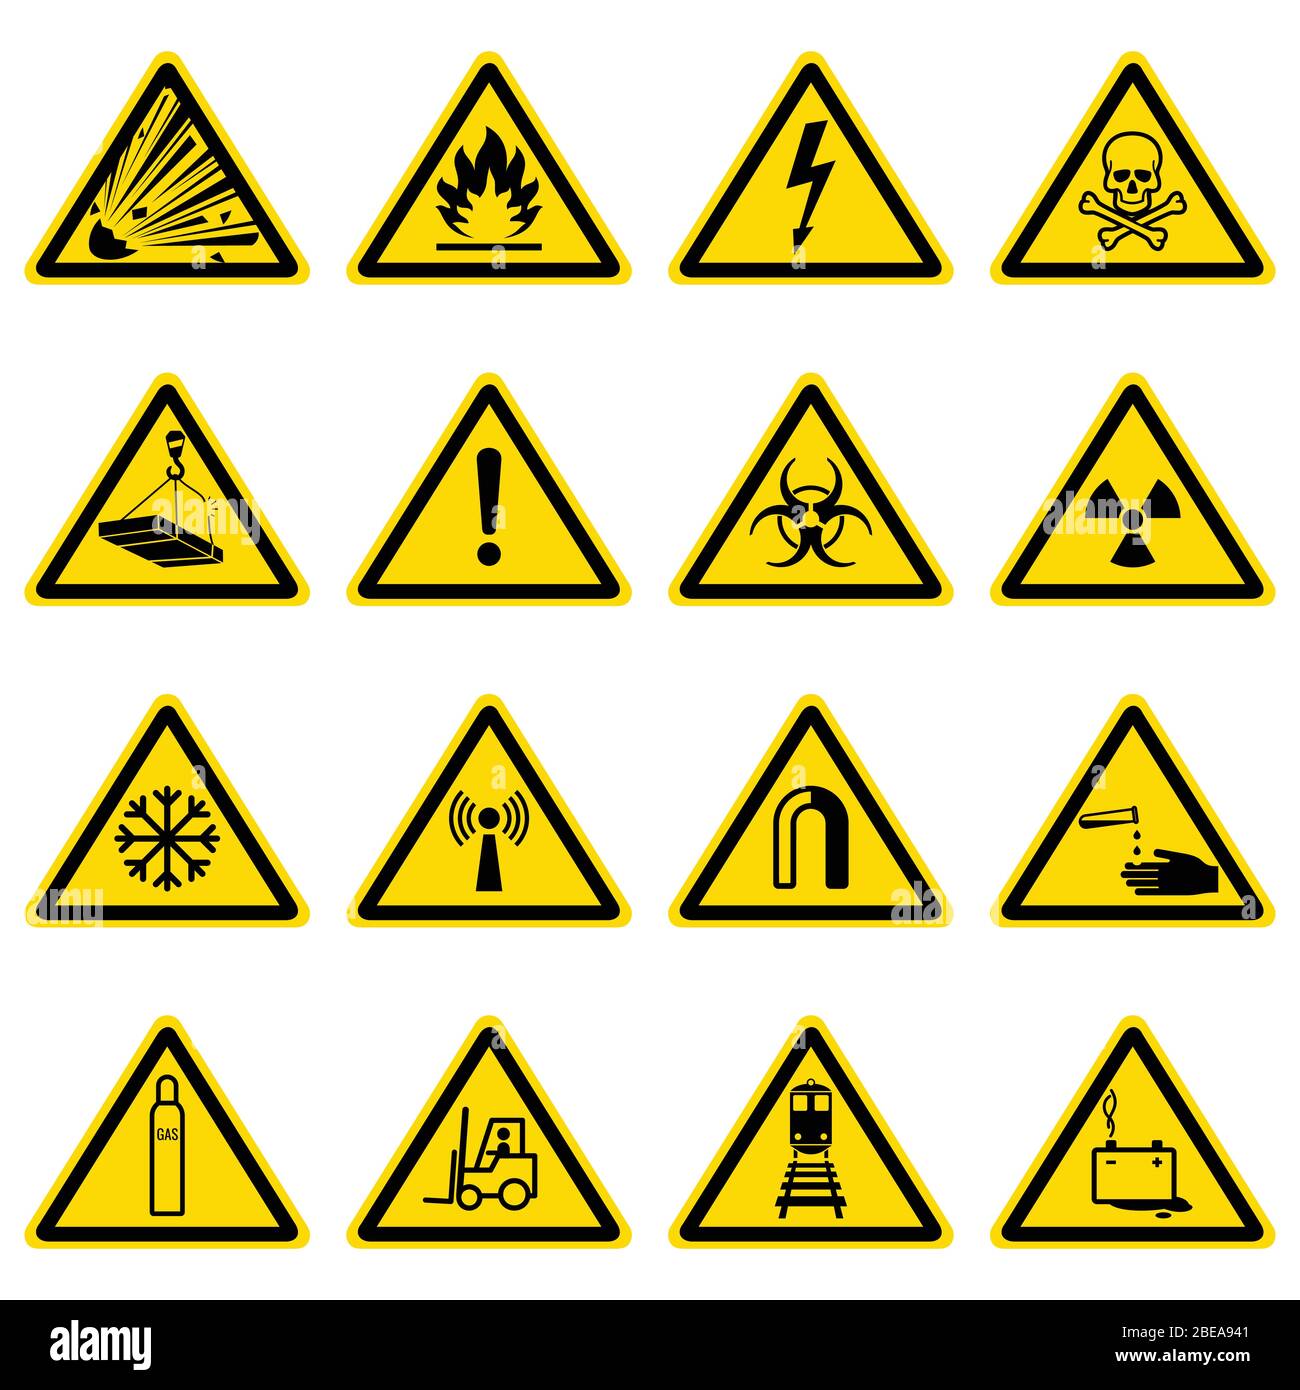 Warnungs- und Gefahrensymbole auf gelben Dreiecken. Abbildung mit Sicherheits- und Vorsichtshinweisen und Risikowarninformationen Stock Vektor